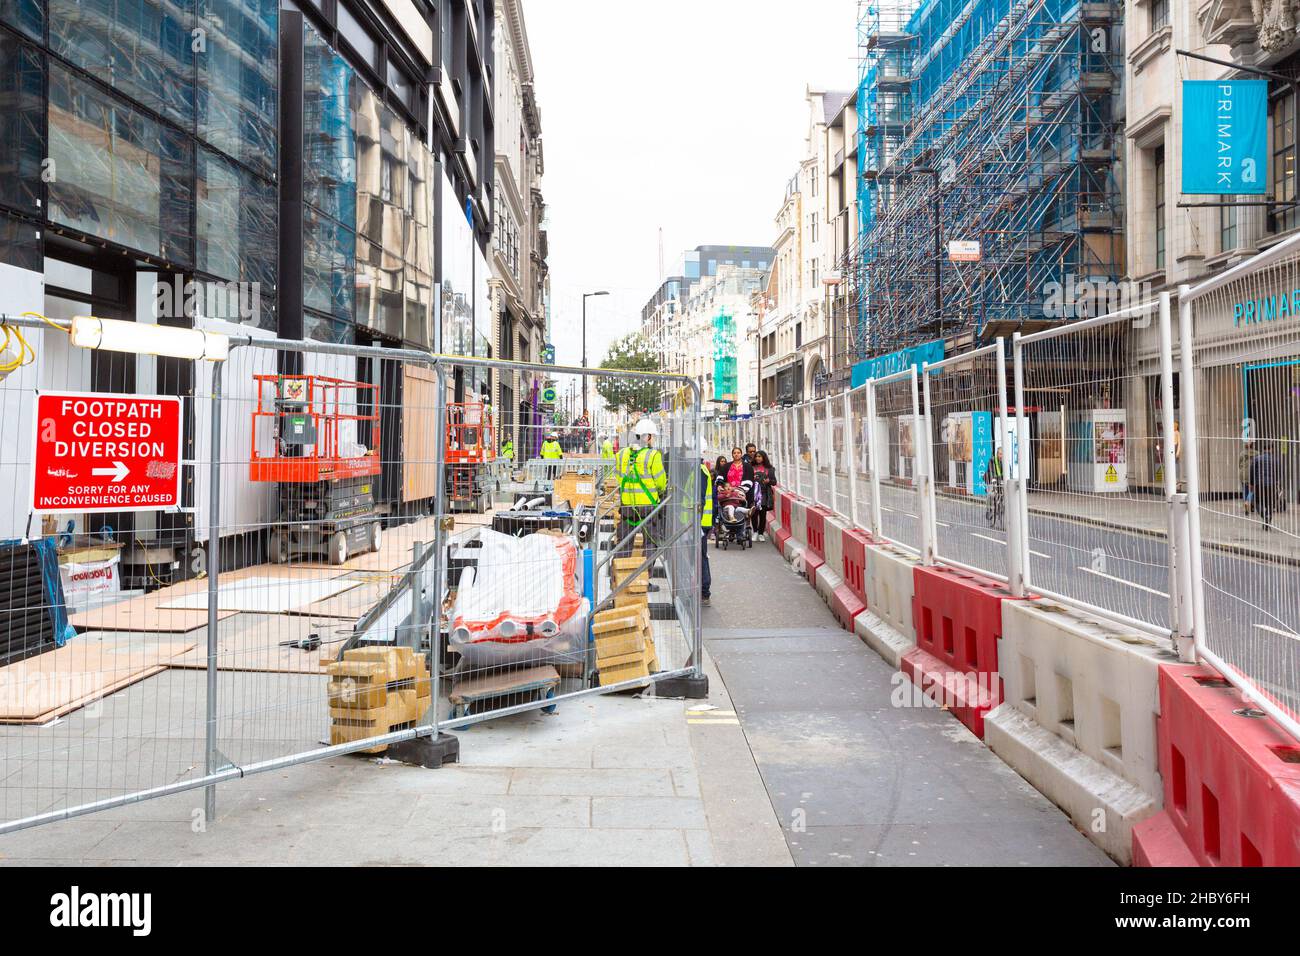 Bauarbeiten entlang der Oxford Street, Fußweg geschlossen Umleitung, london, großbritannien Stockfoto